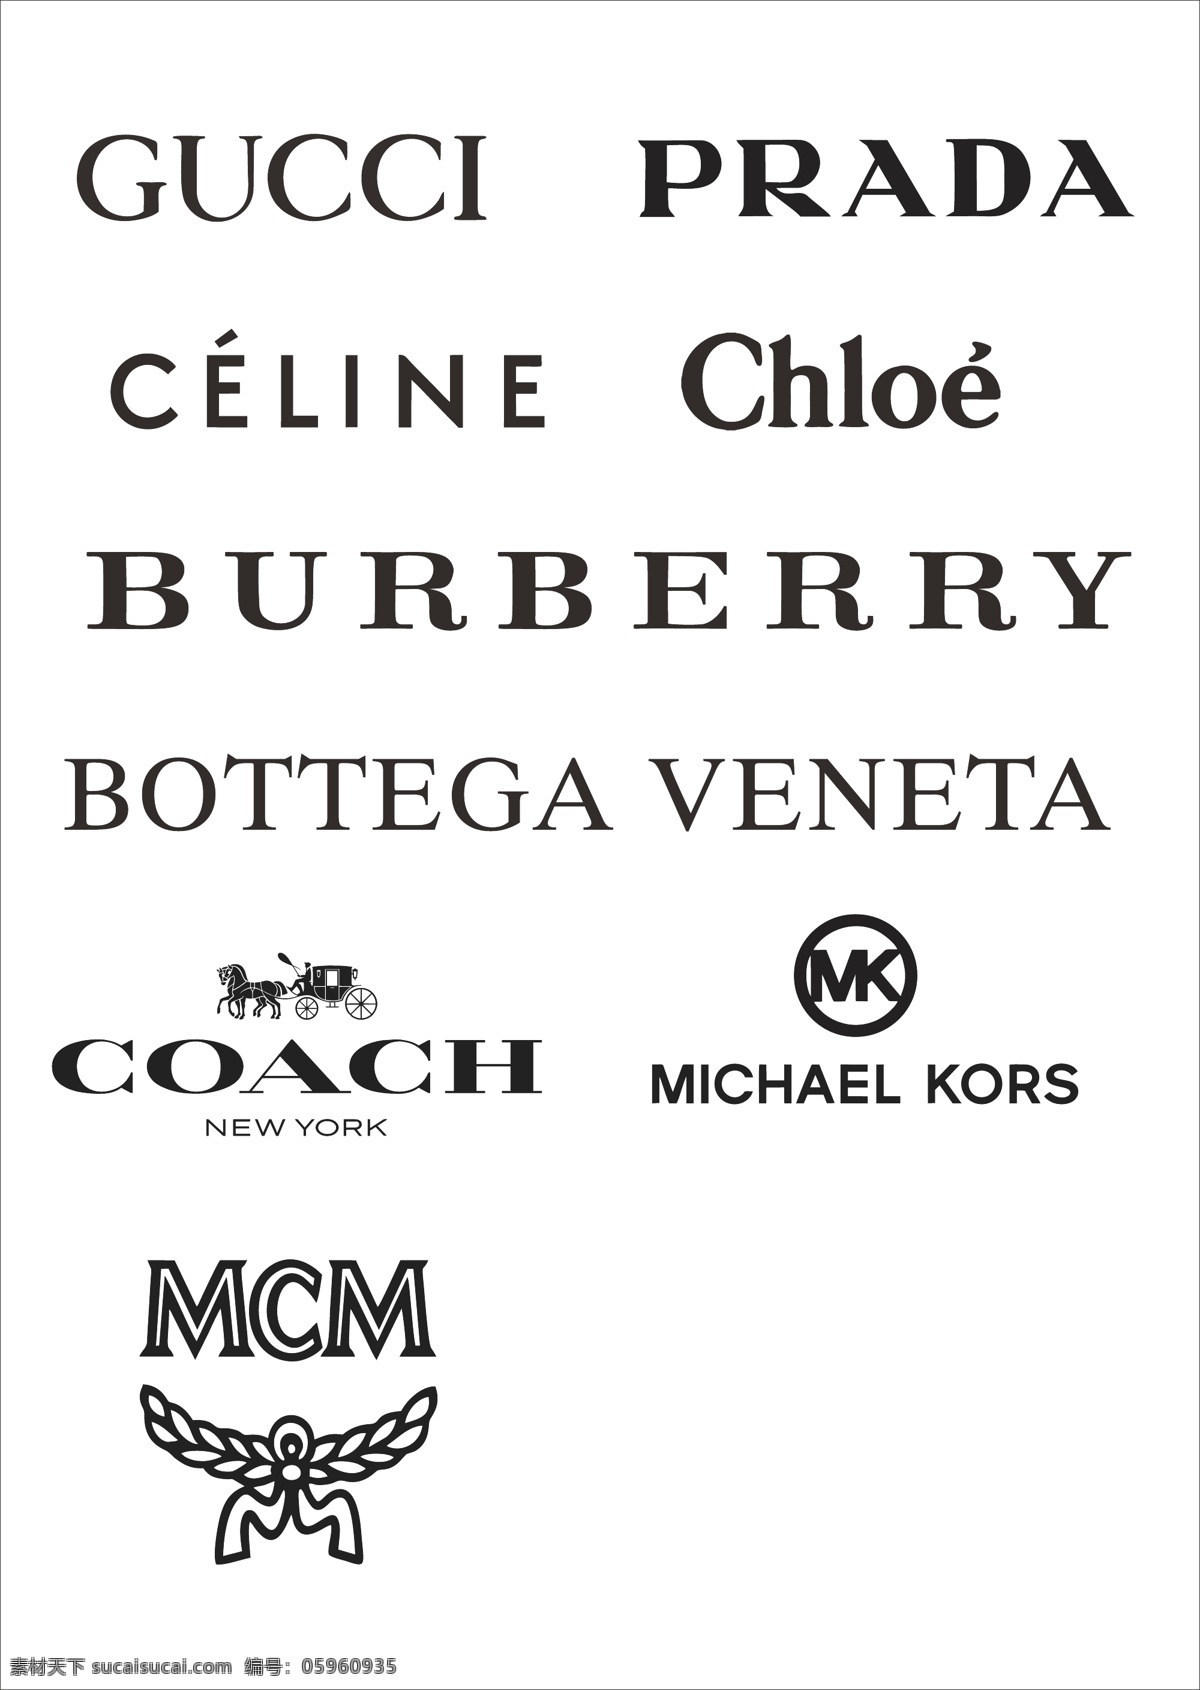 奢侈品牌 logo gucci burberry 奢侈品 prada mk coach 标志图标 企业 标志